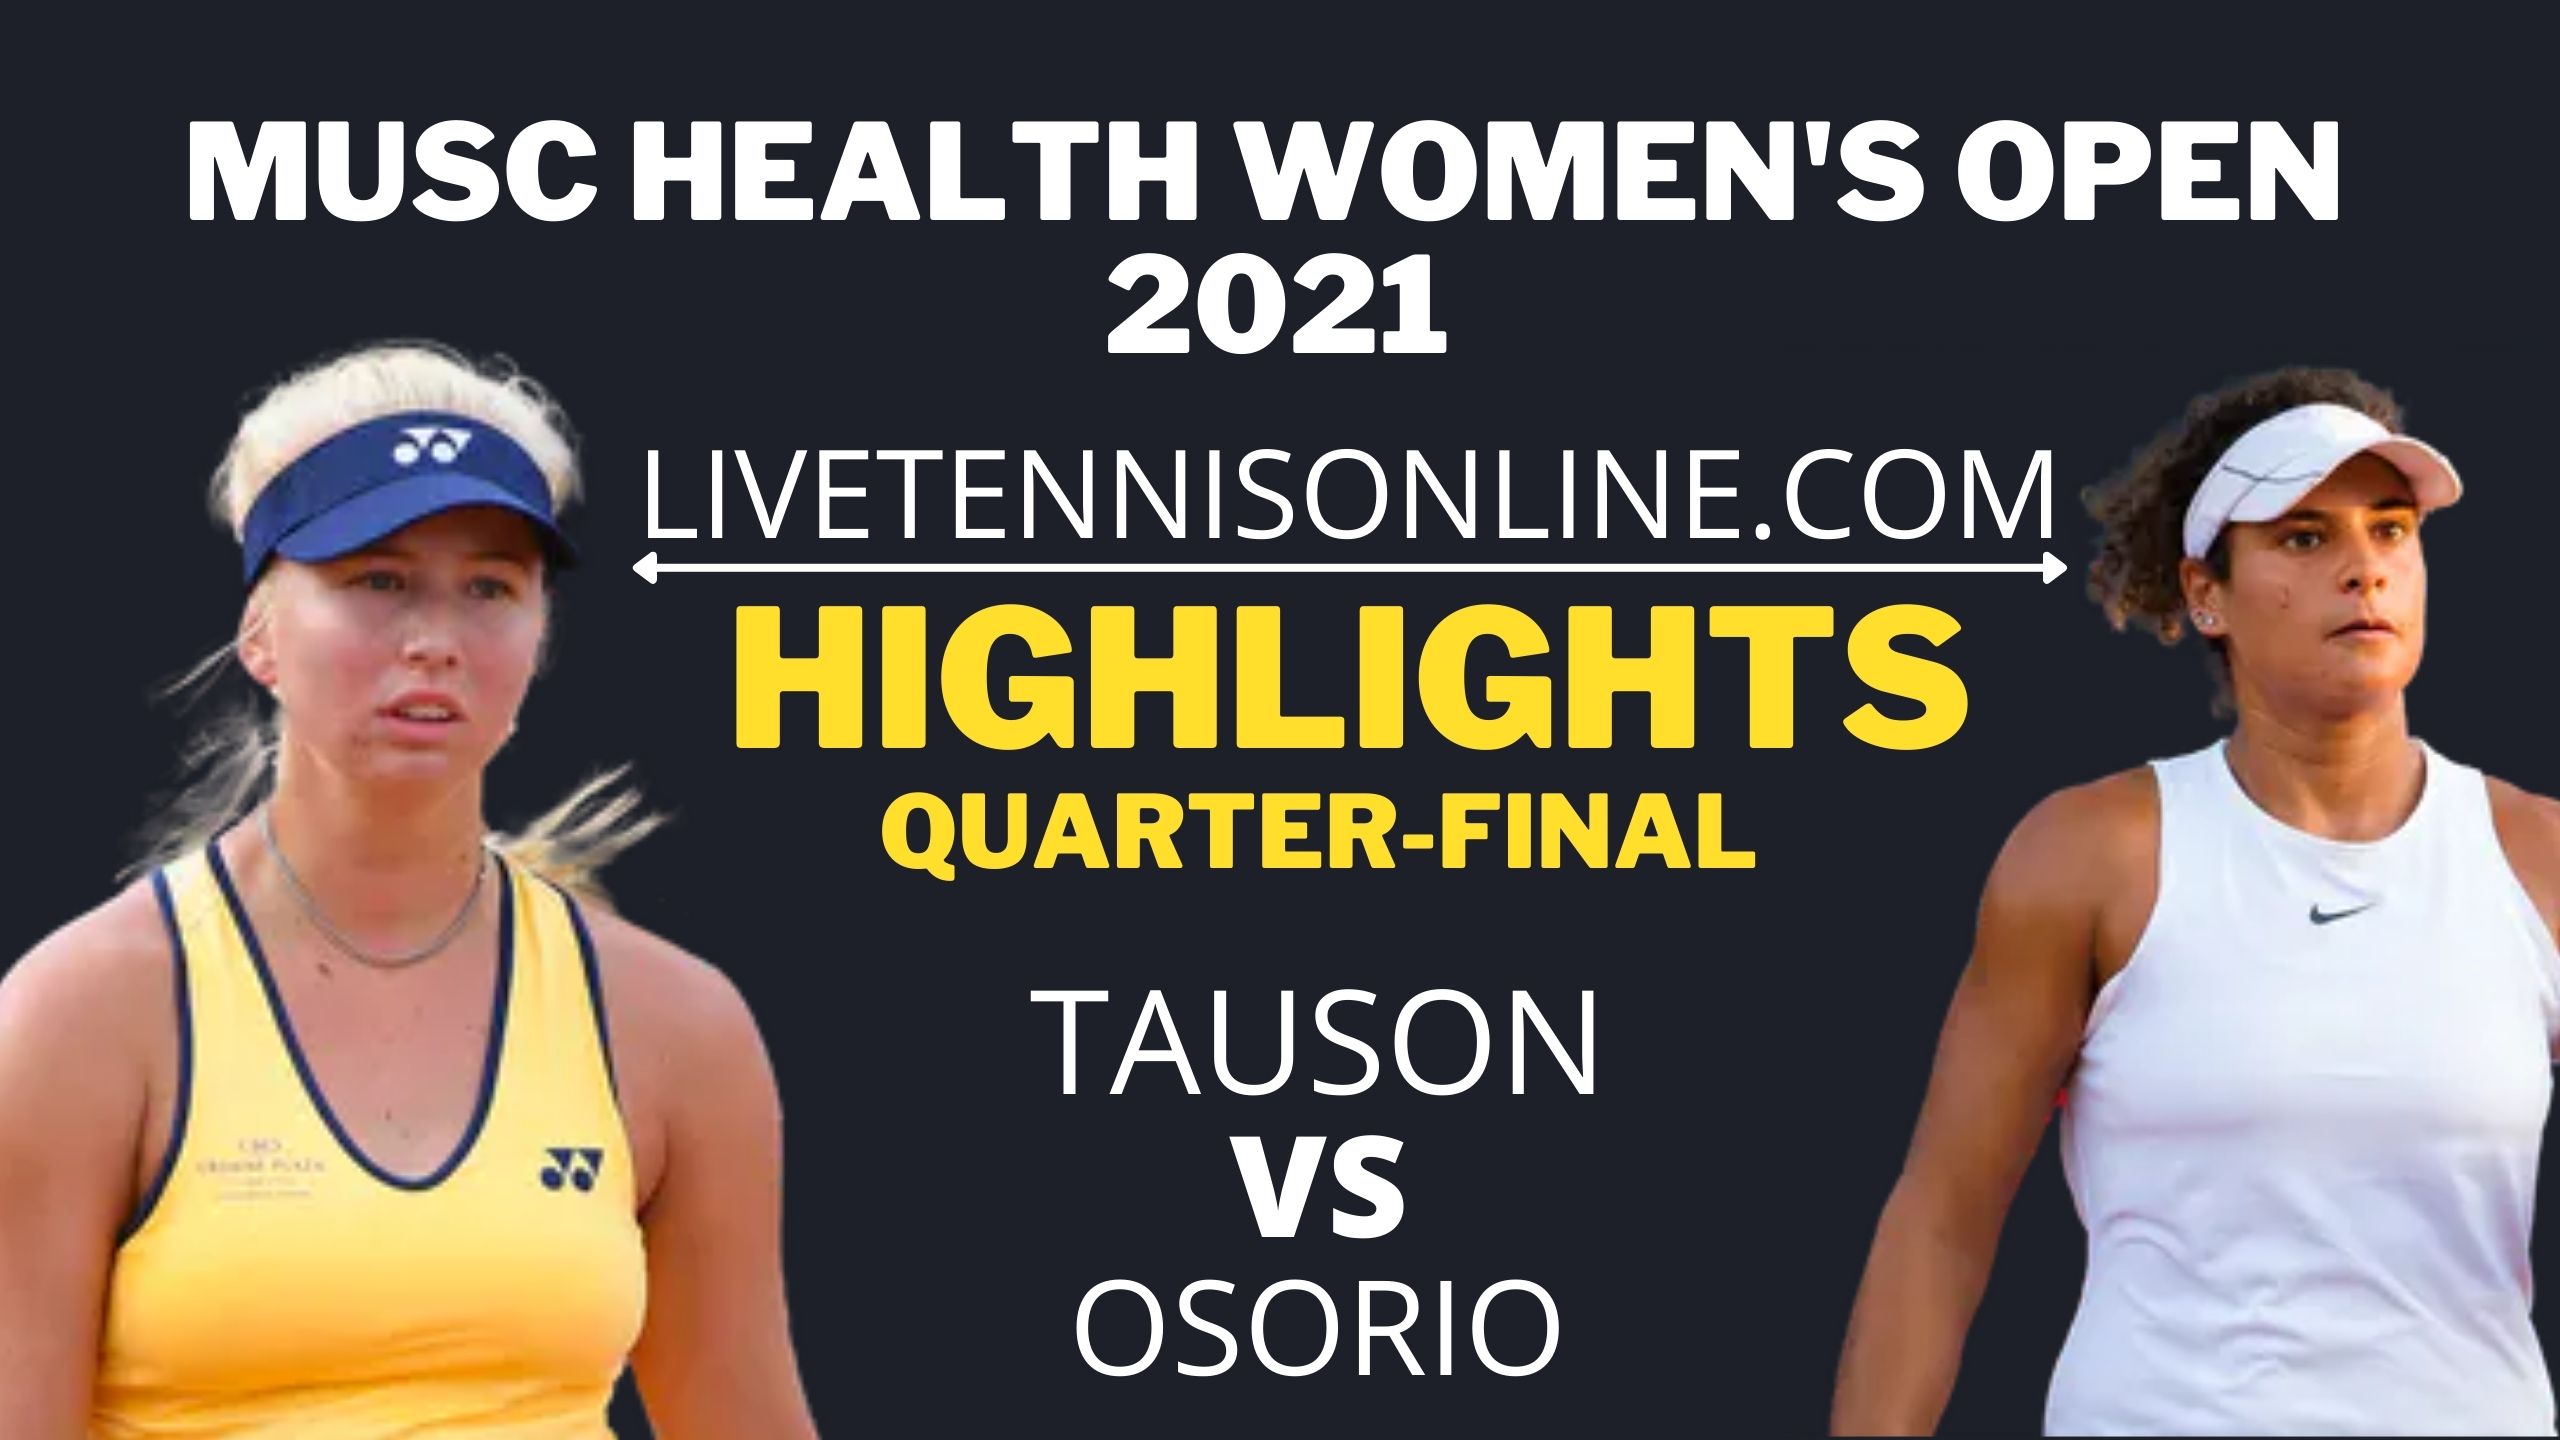 Tauson Vs Osorio Quarter Final Highlights 2021